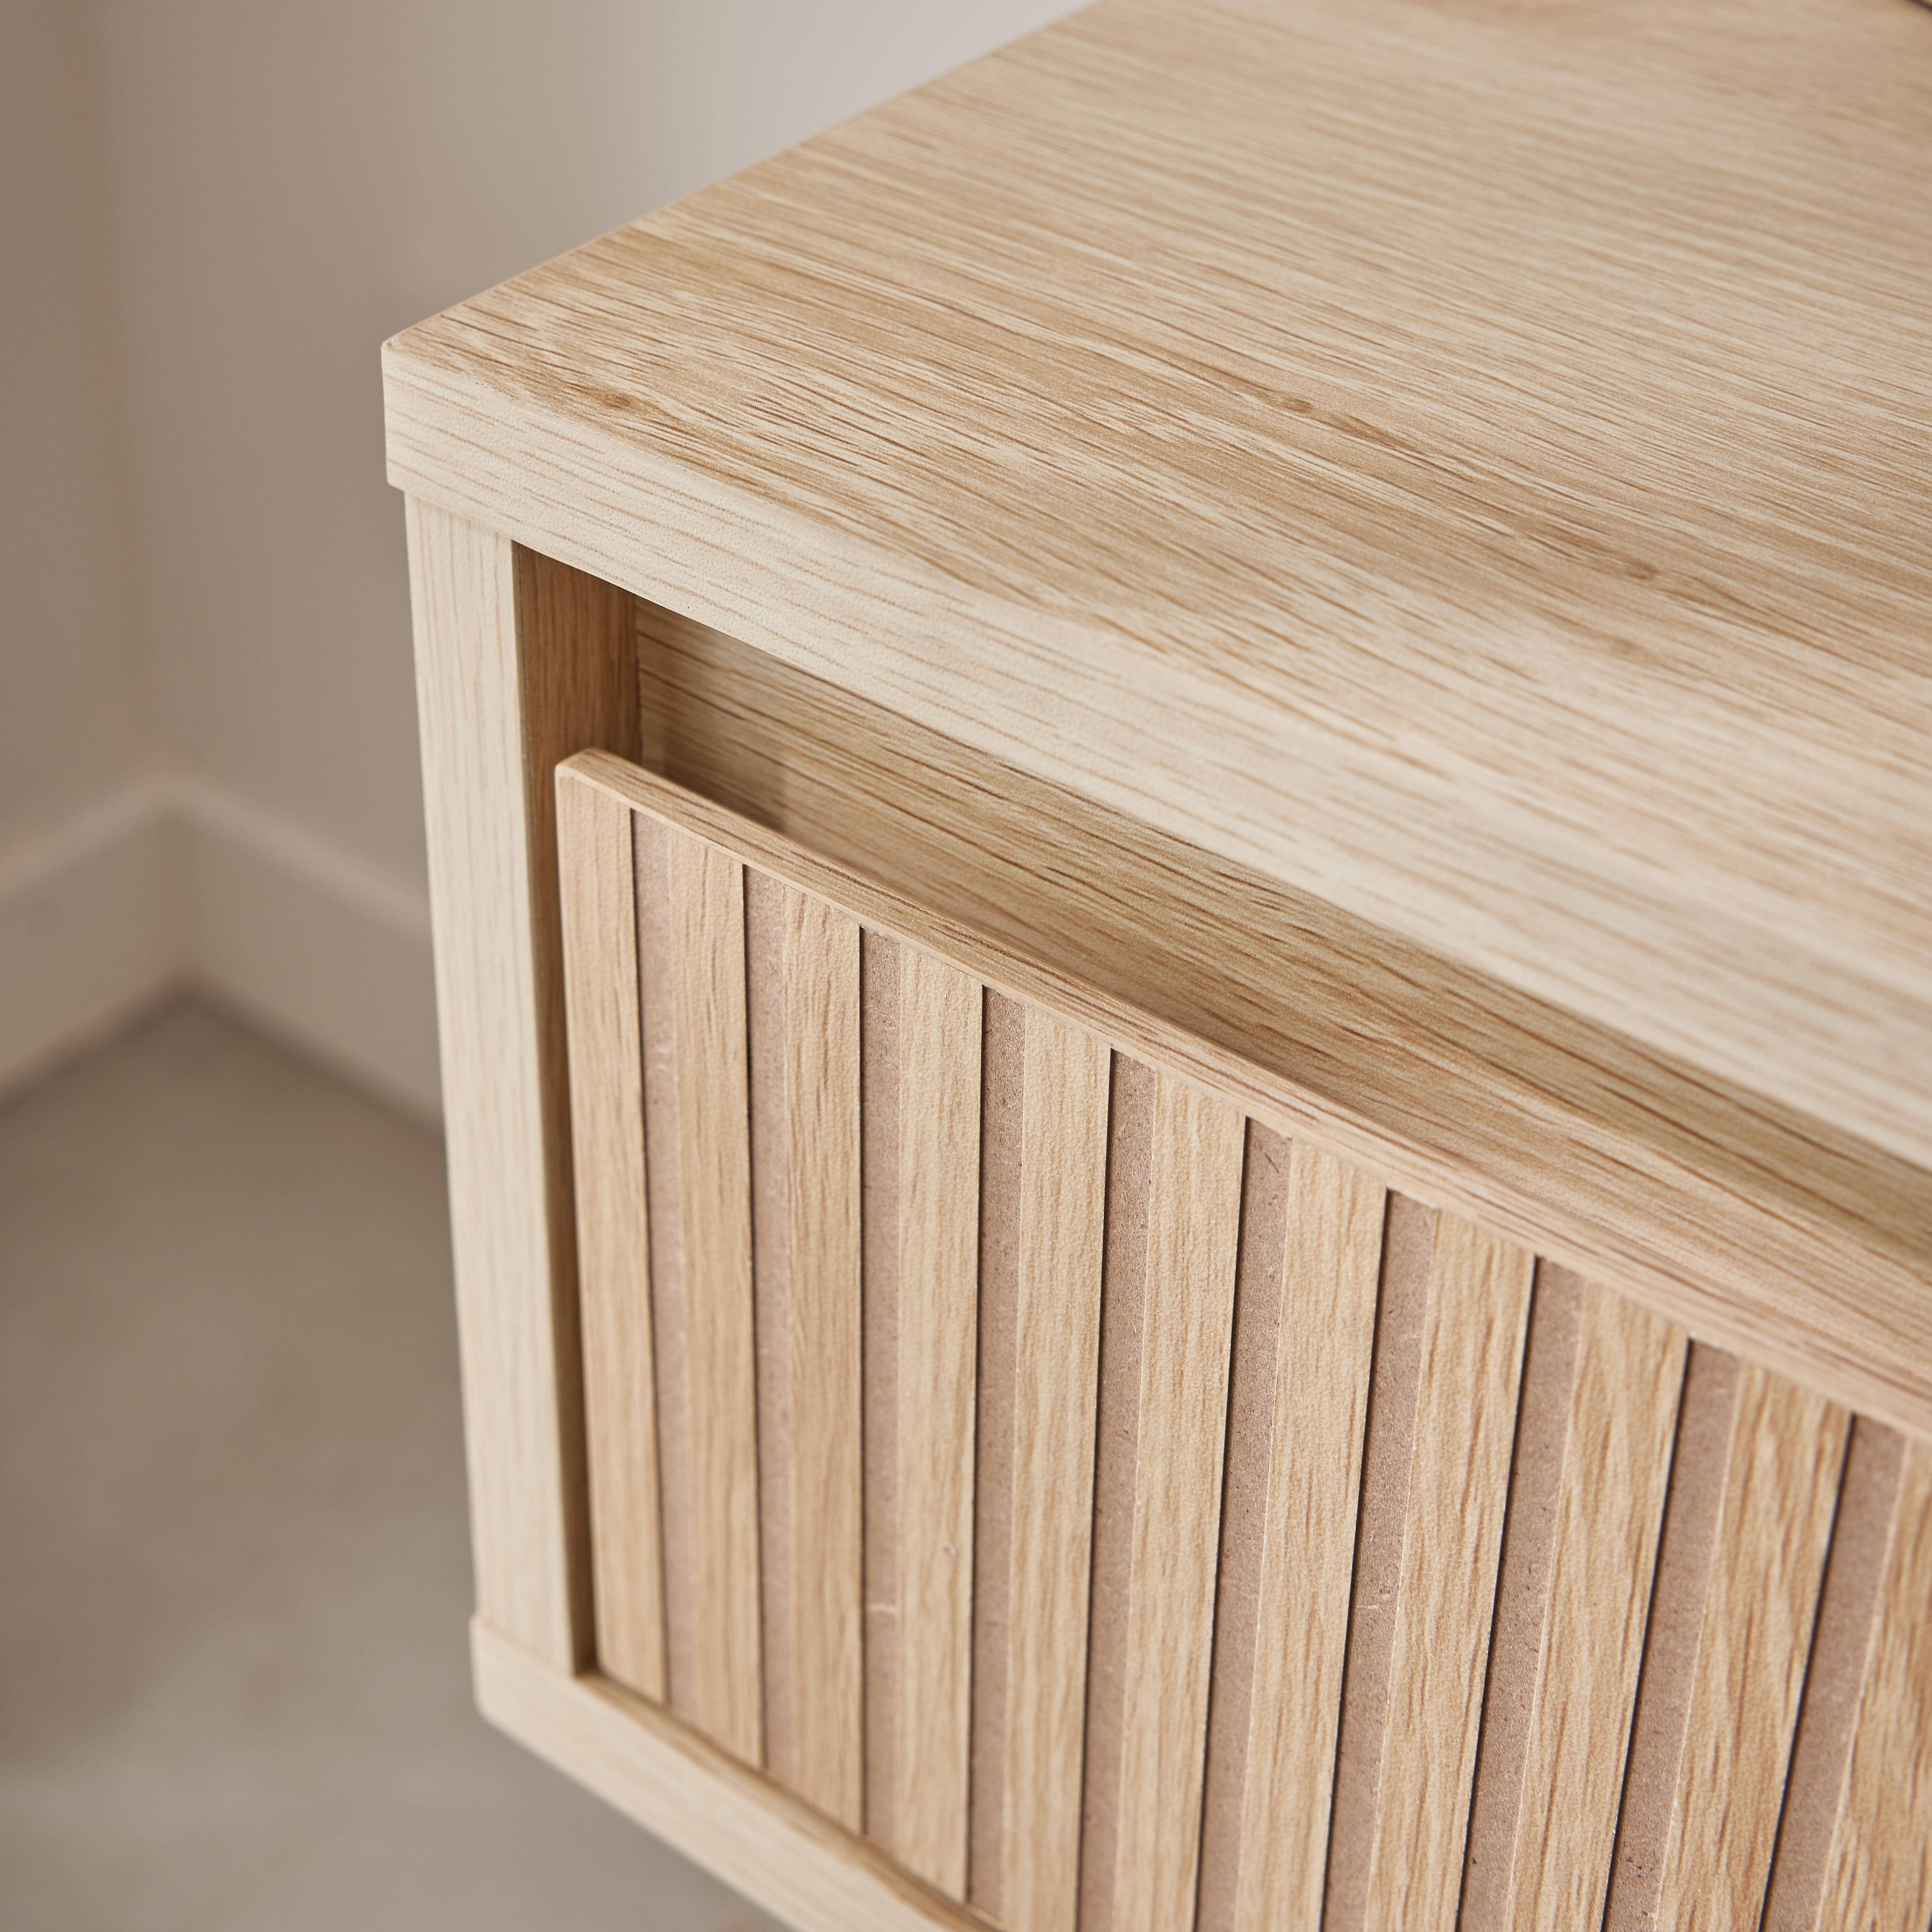 (conjunto de 2) Mesa de cabeceira com uma gaveta. Painéis laminados em cor natural. Pés em madeira de abeto.  L 39 x 39 x A 55,4cm LINEAR,sweeek,Photo3